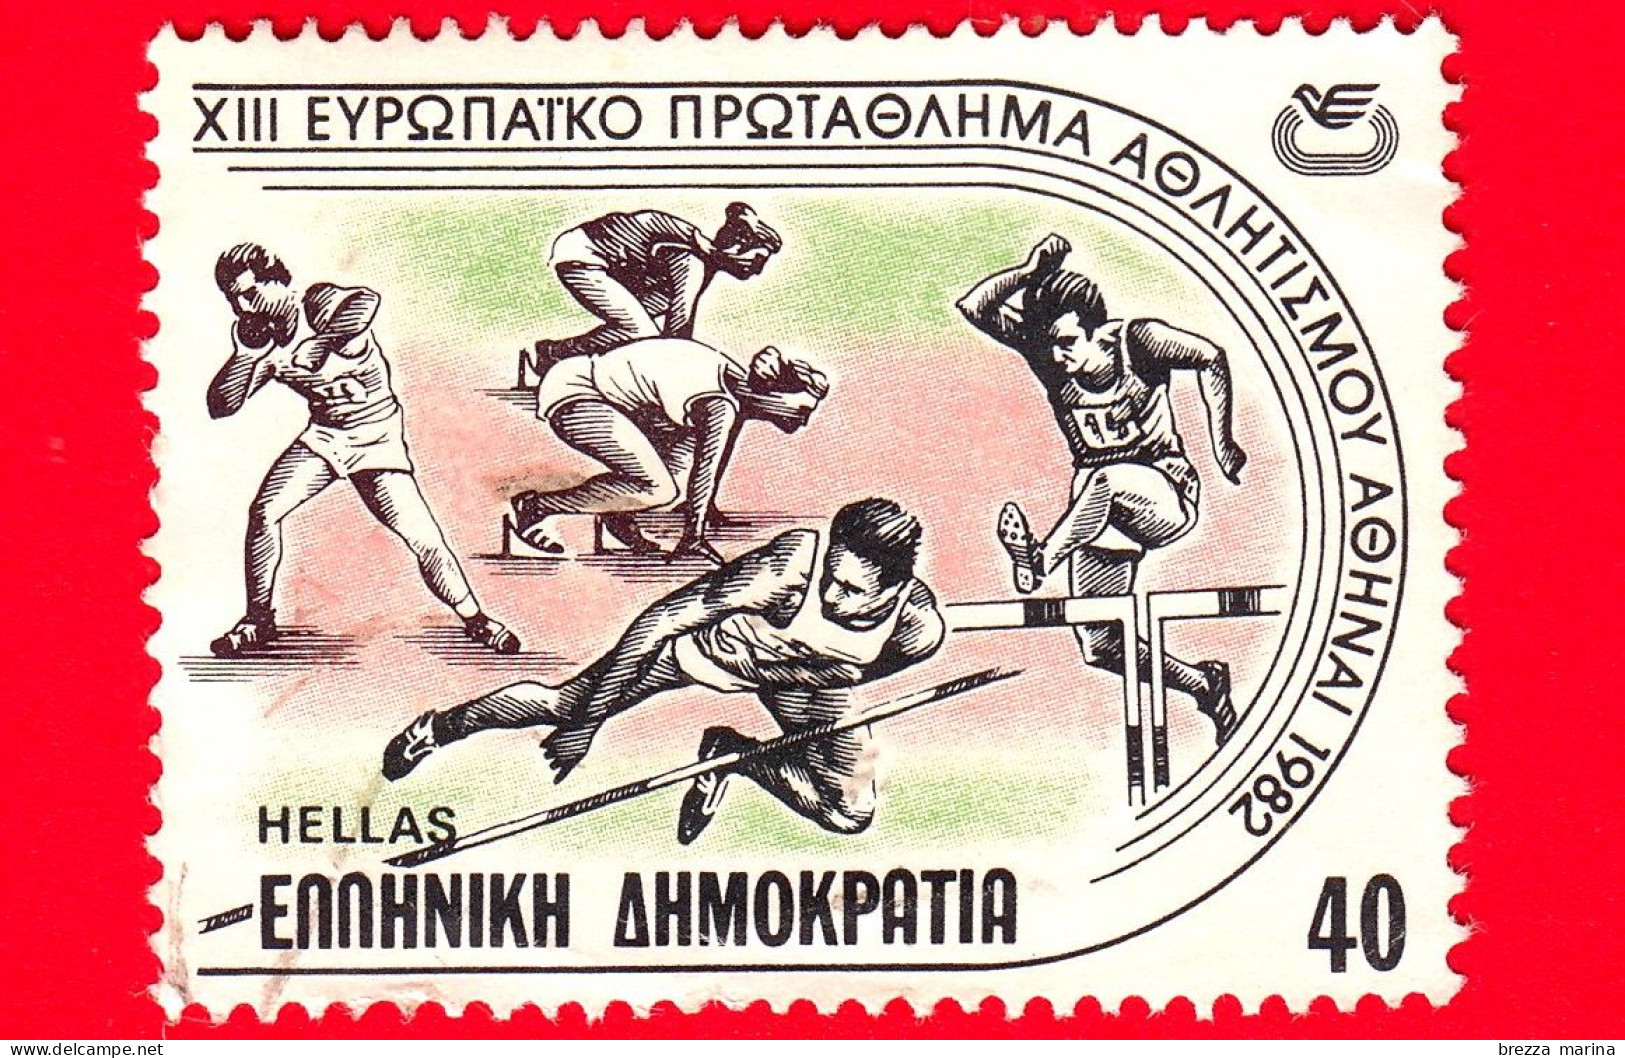 GRECIA - HELLAS - Usato - 1982 - Campionato Europeo Di Atletica - Corsa - Getto Del Peso - Salto In Alto - 40 - Gebruikt